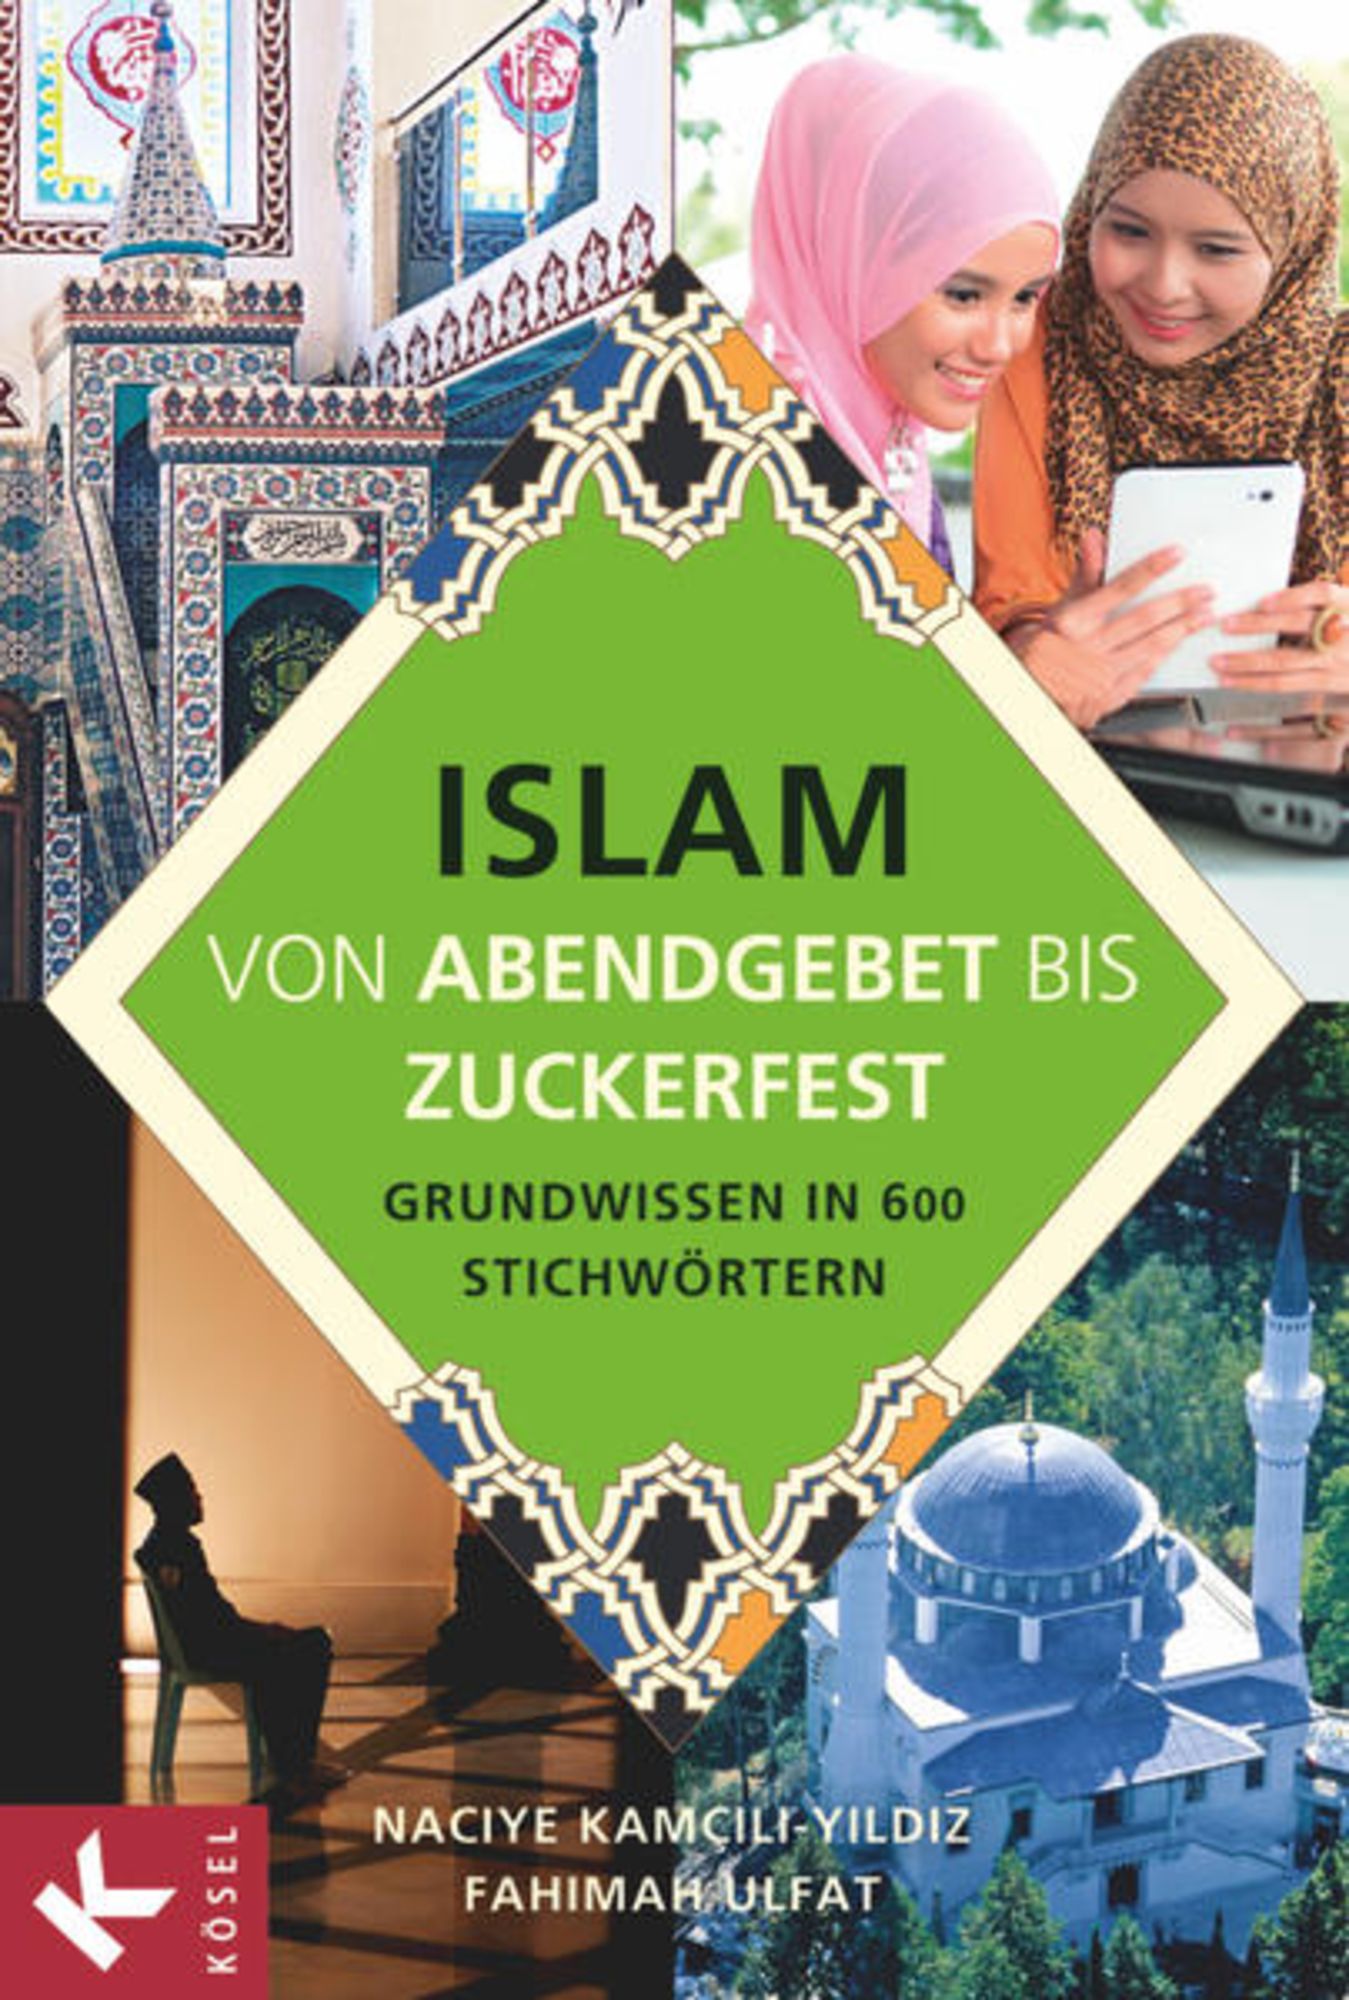 Islam von Abendgebet bis Zuckerfest' - 'Religion & Ethik